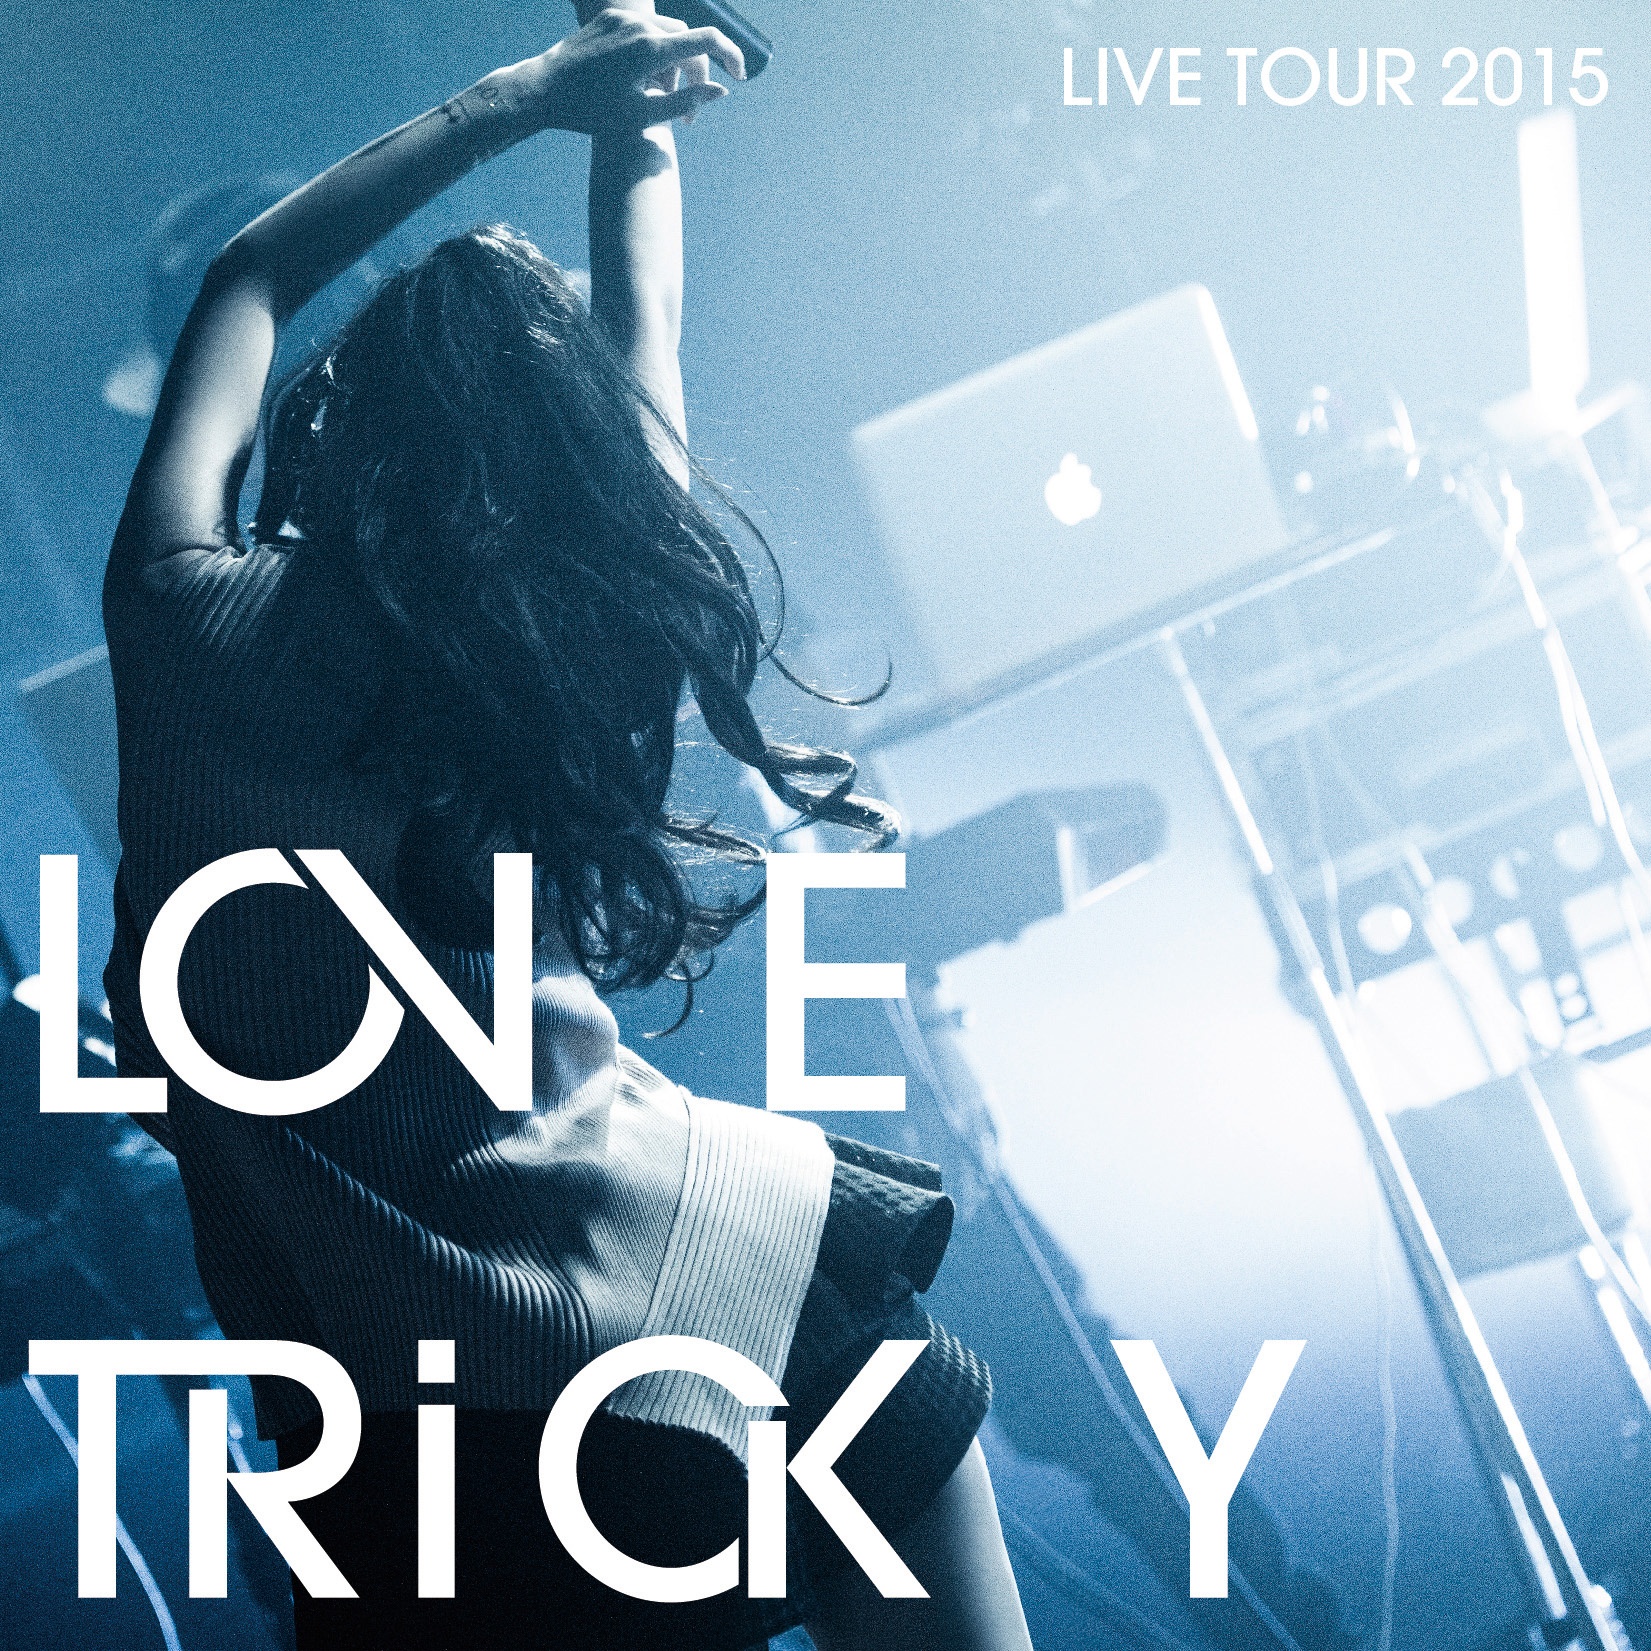 yu LOVE TRiCKY LIVE TOUR 2015 ti zhong jian